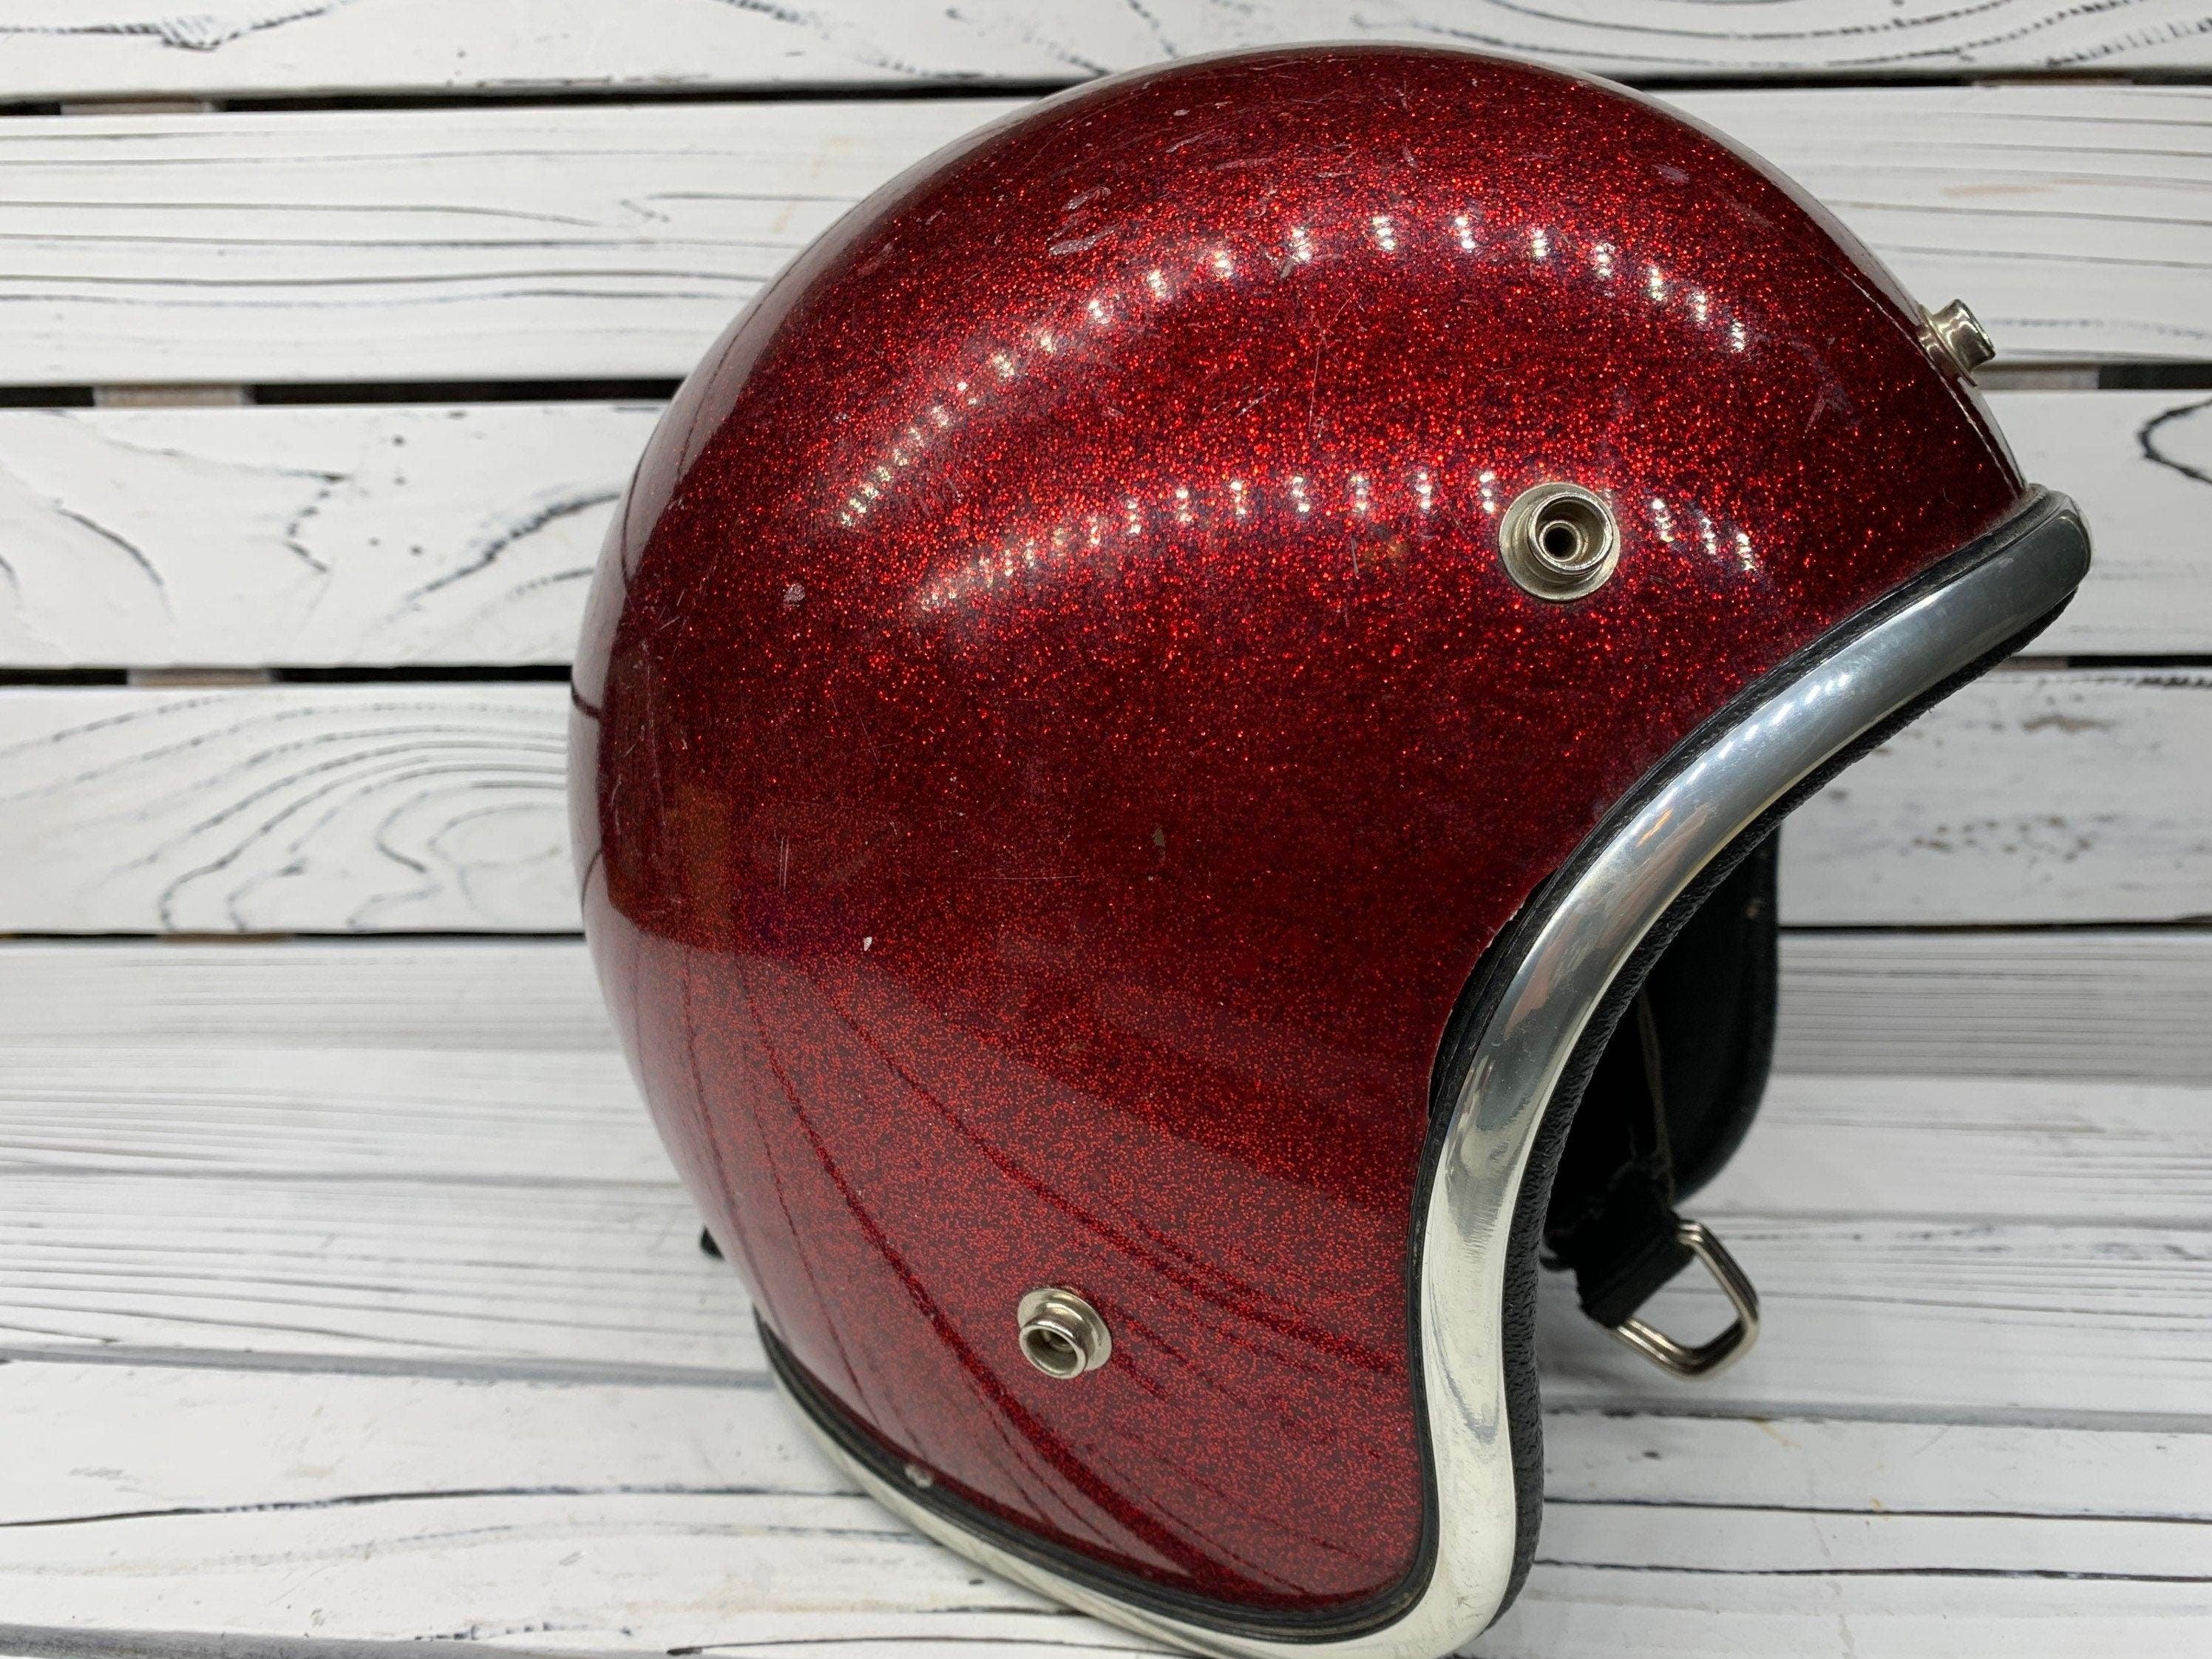 Vintage Red Sparkly Motorcycle Helmet, America 60s 70s Helmet by 